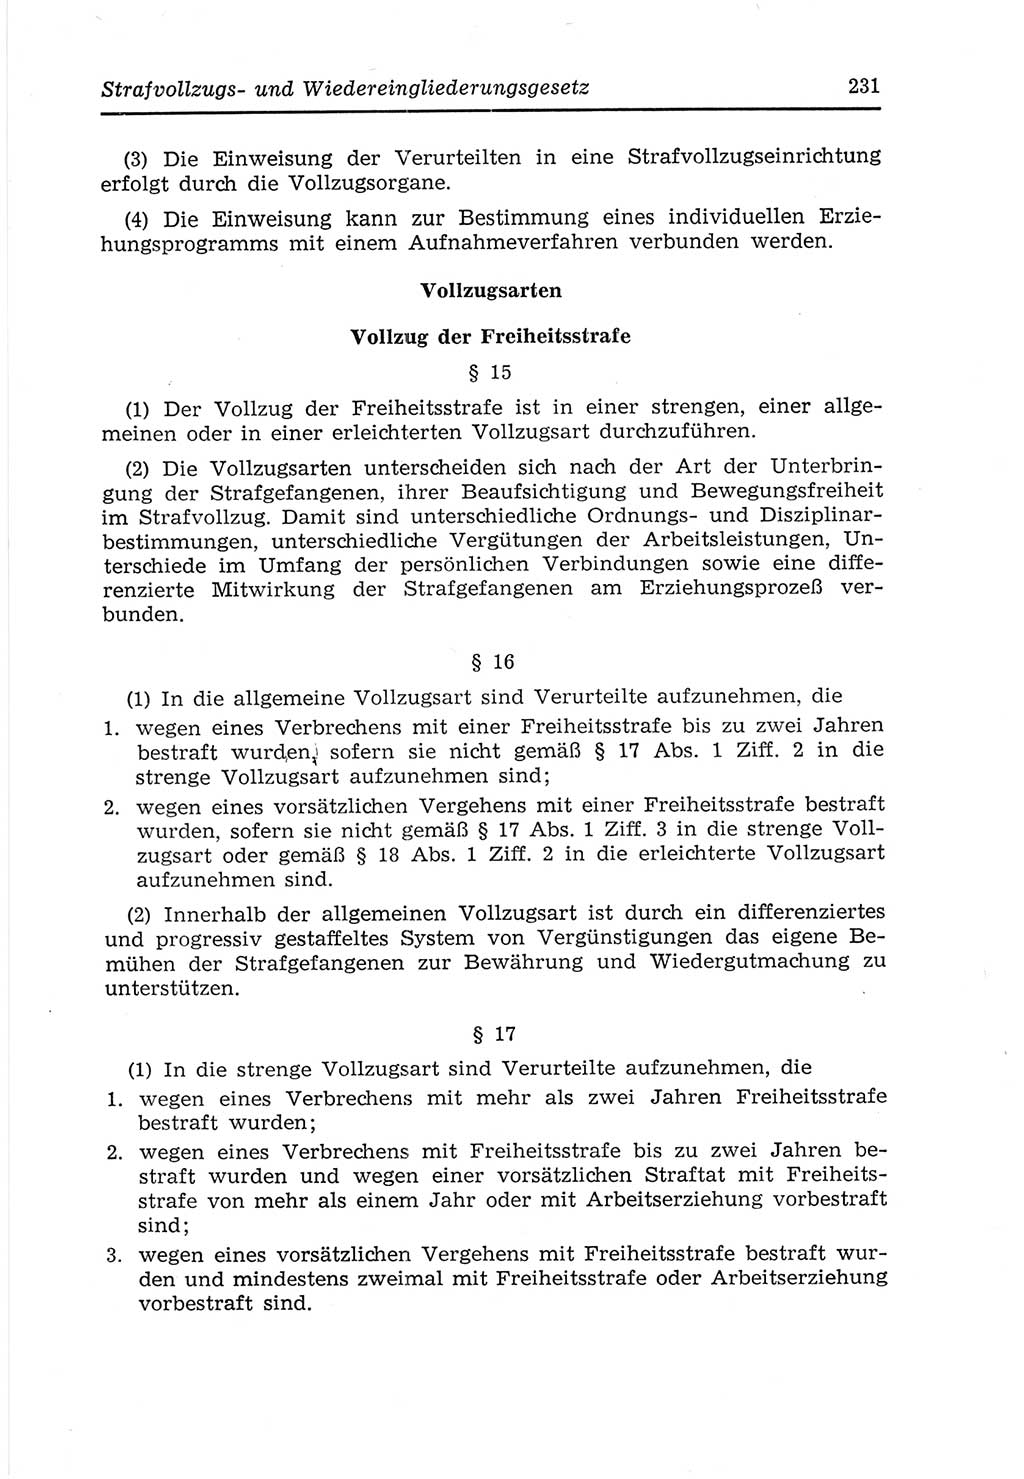 Strafvollzugs- und Wiedereingliederungsgesetz (SVWG) der Deutschen Demokratischen Republik (DDR) 1968, Seite 231 (SVWG DDR 1968, S. 231)